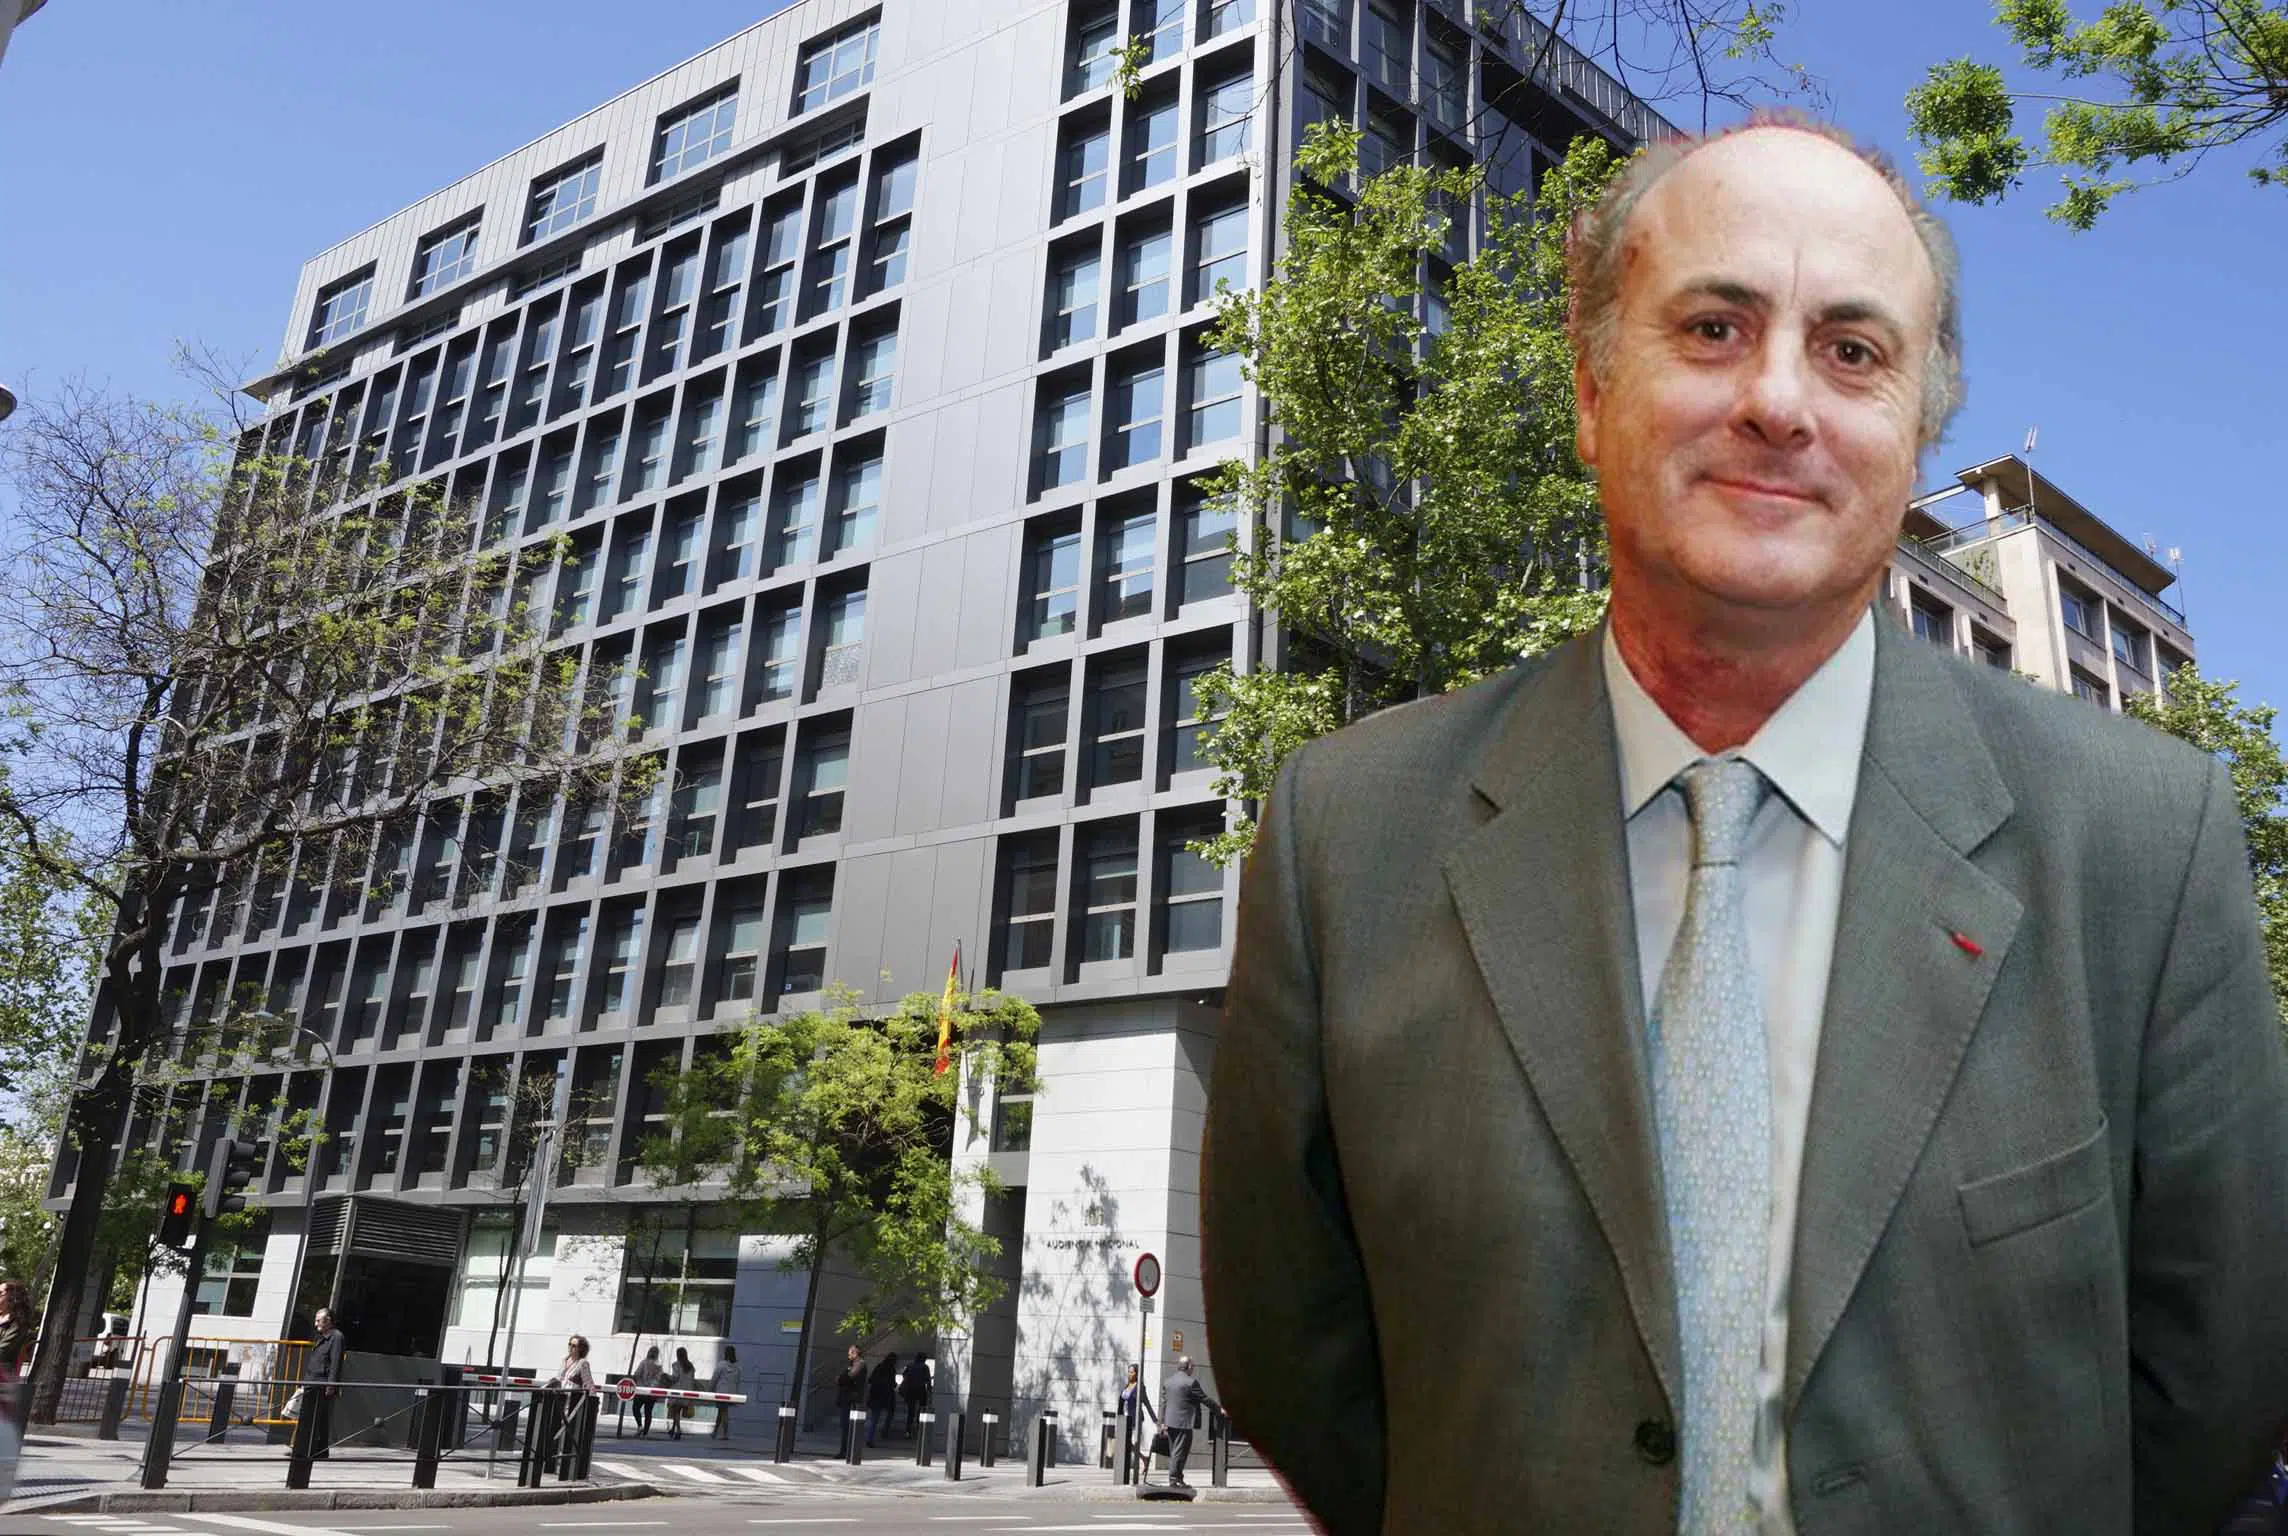 El CGPJ aprueba adelantar la jubilación del juez García Castellón al 2 de septiembre